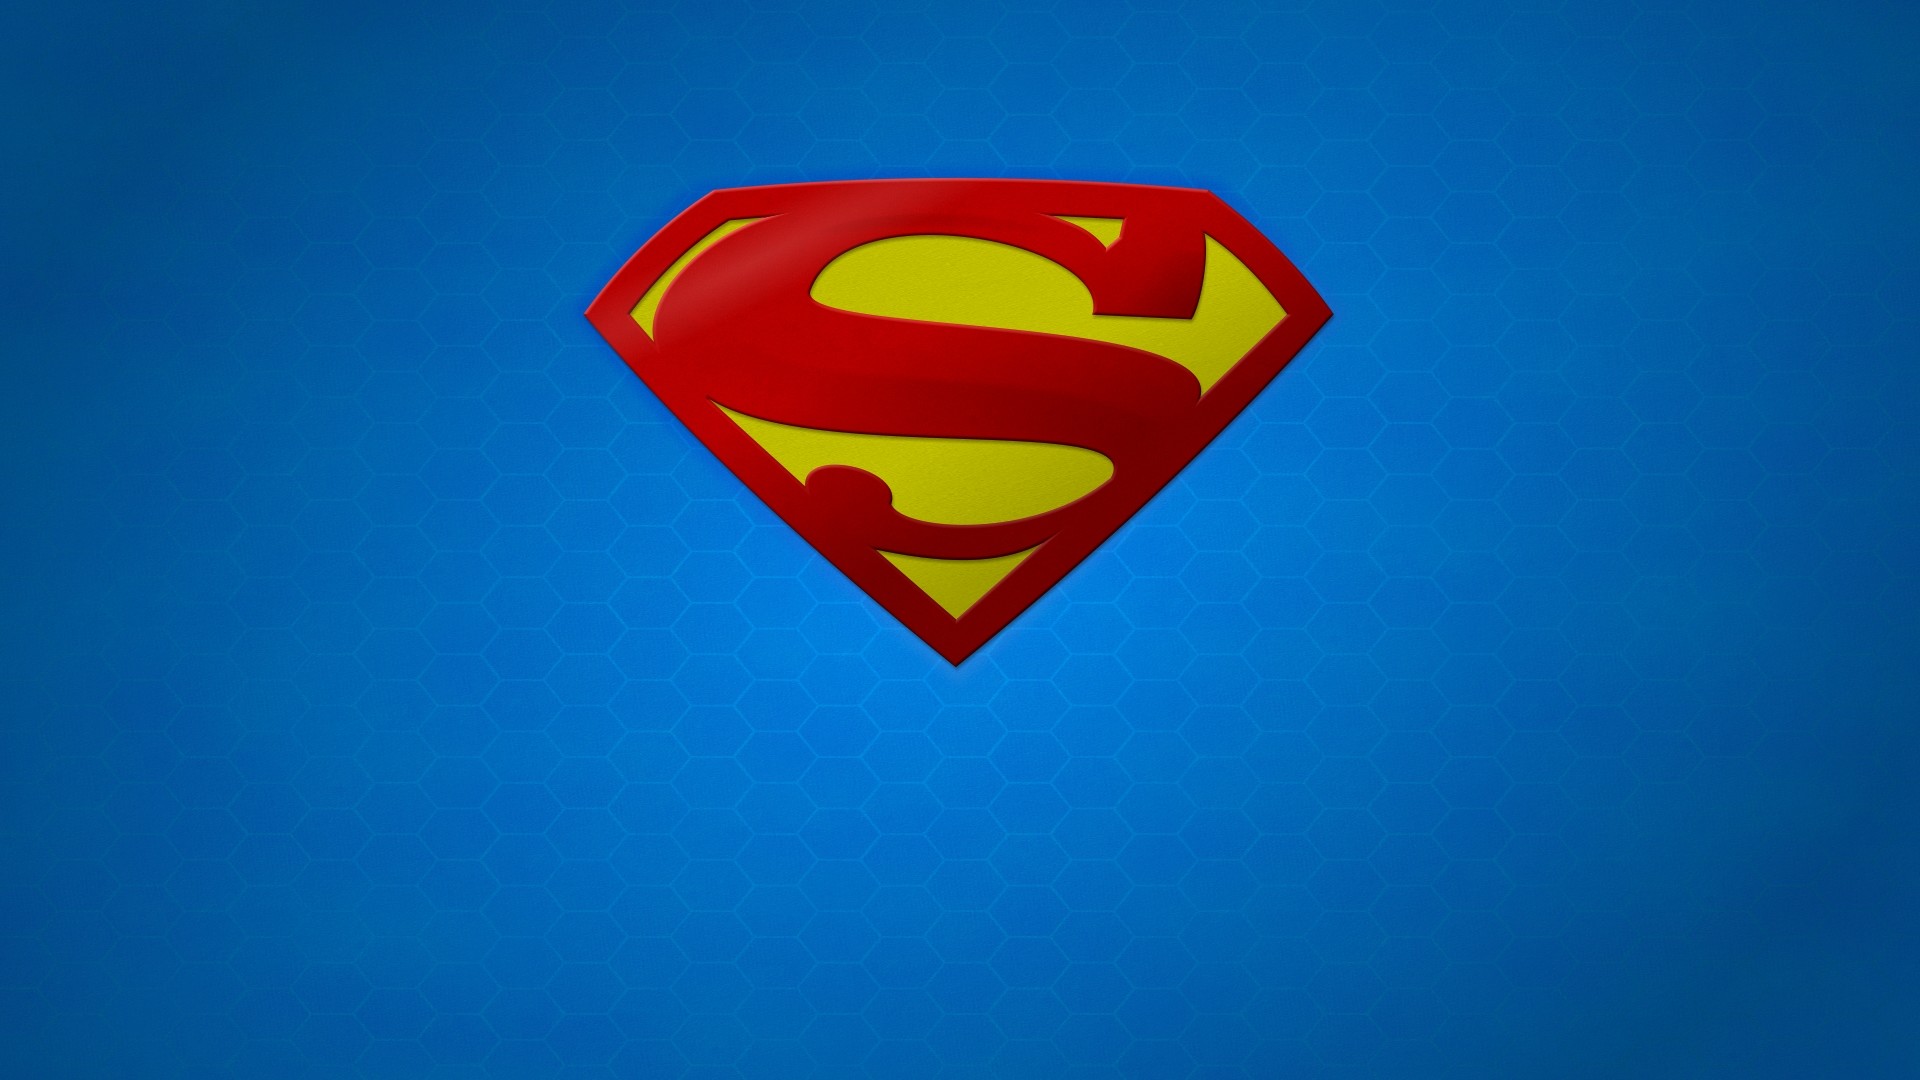 슈퍼맨 3d 벽지,슈퍼맨,슈퍼 히어로,빨간,소설 속의 인물,사법 리그